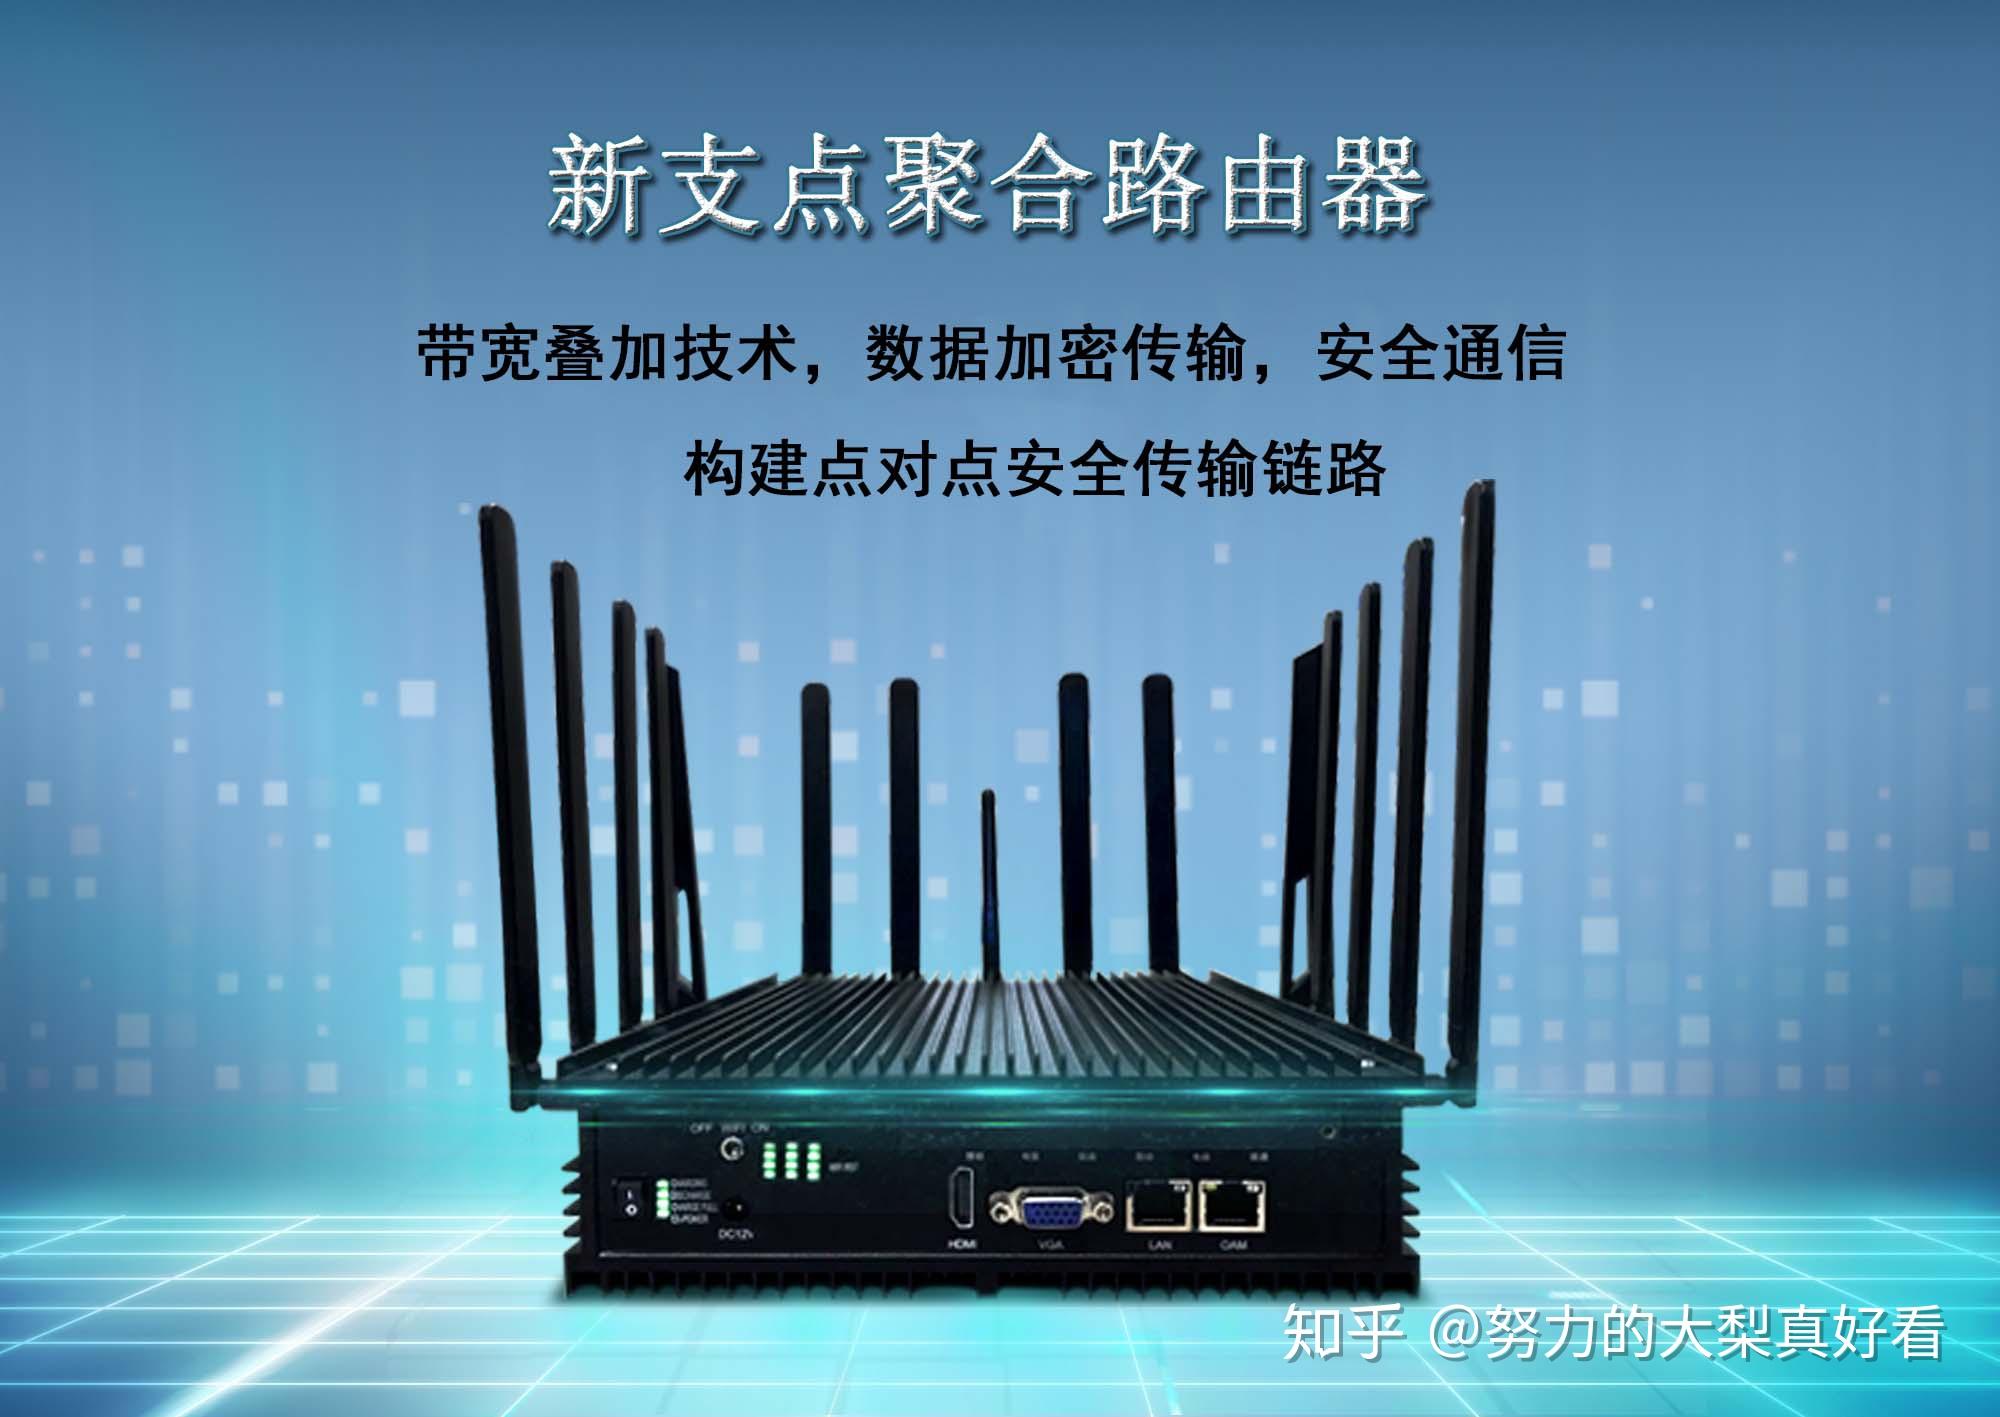 上海联通 5G 网络实验：速度与稳定性的双重考验，开启未来无限可能